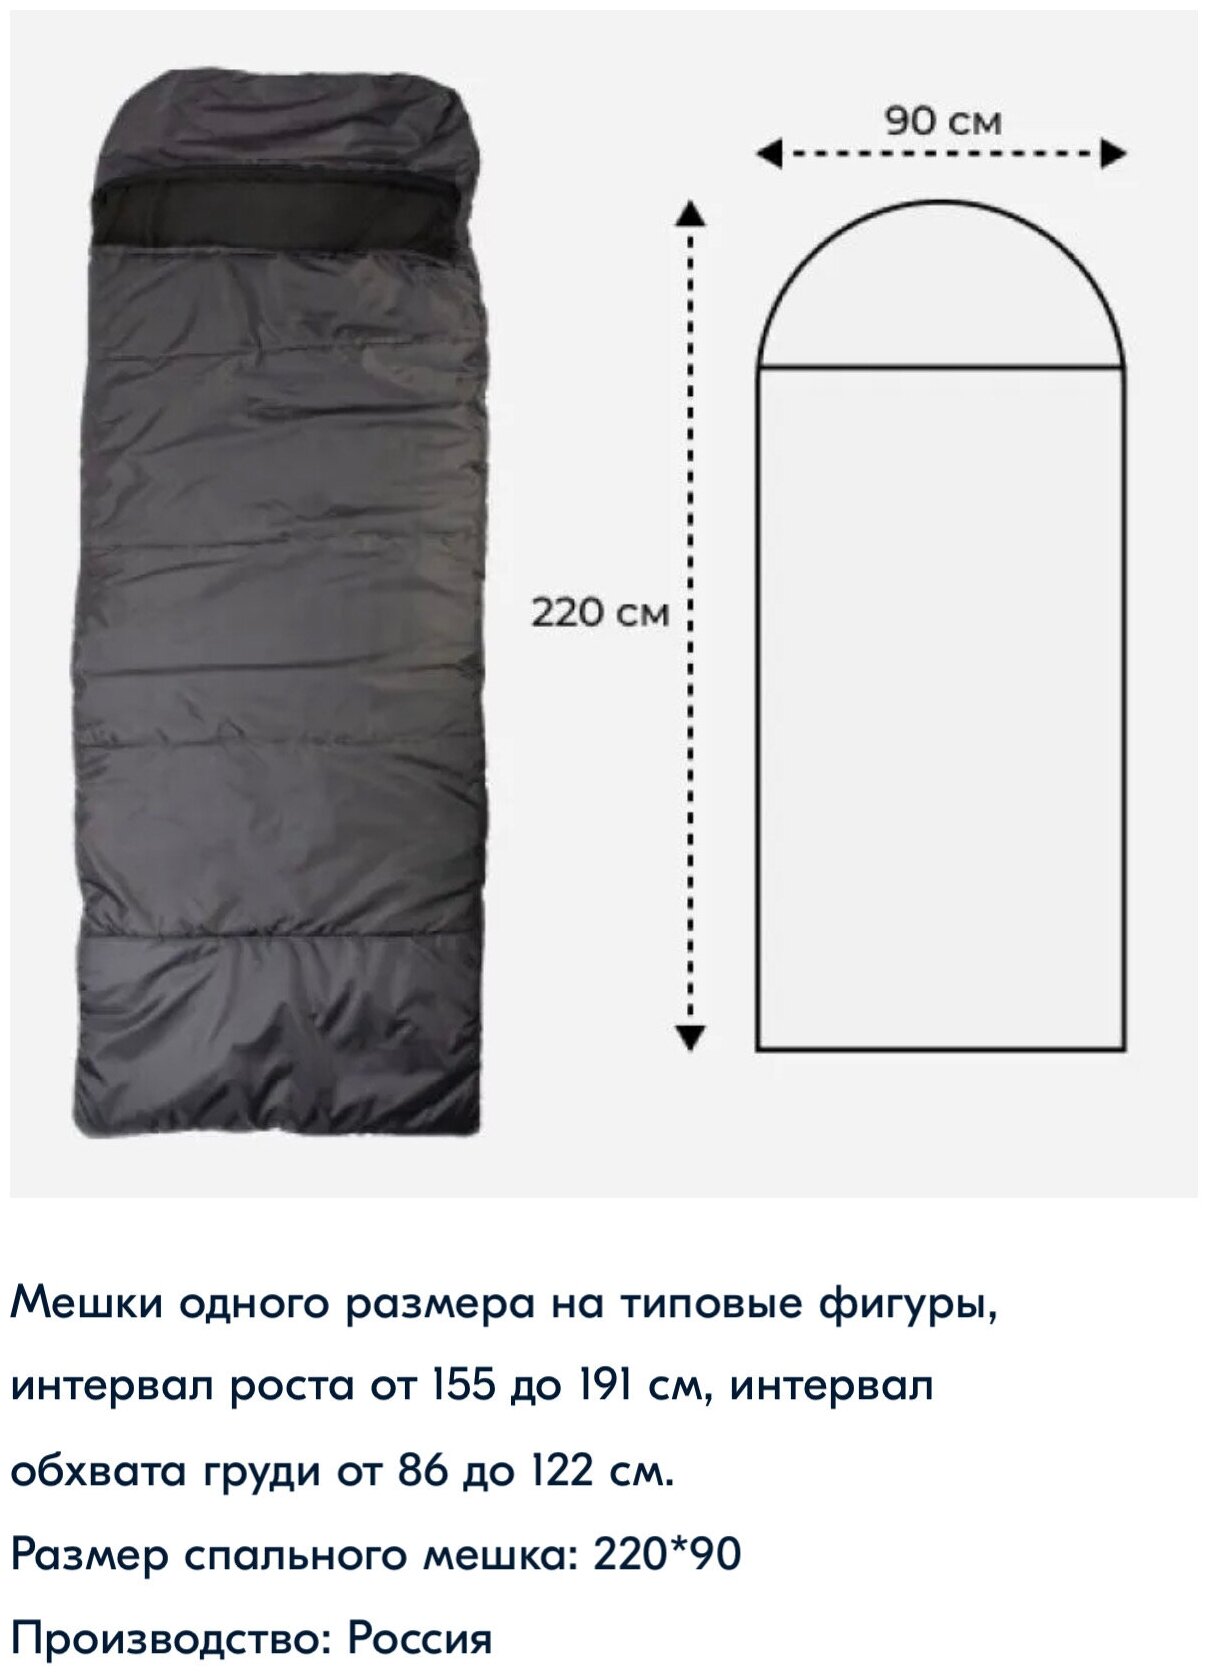 Спальный мешок, зимний до -30, цвет Хаки, Артика, 220смх90см, производитель Россия